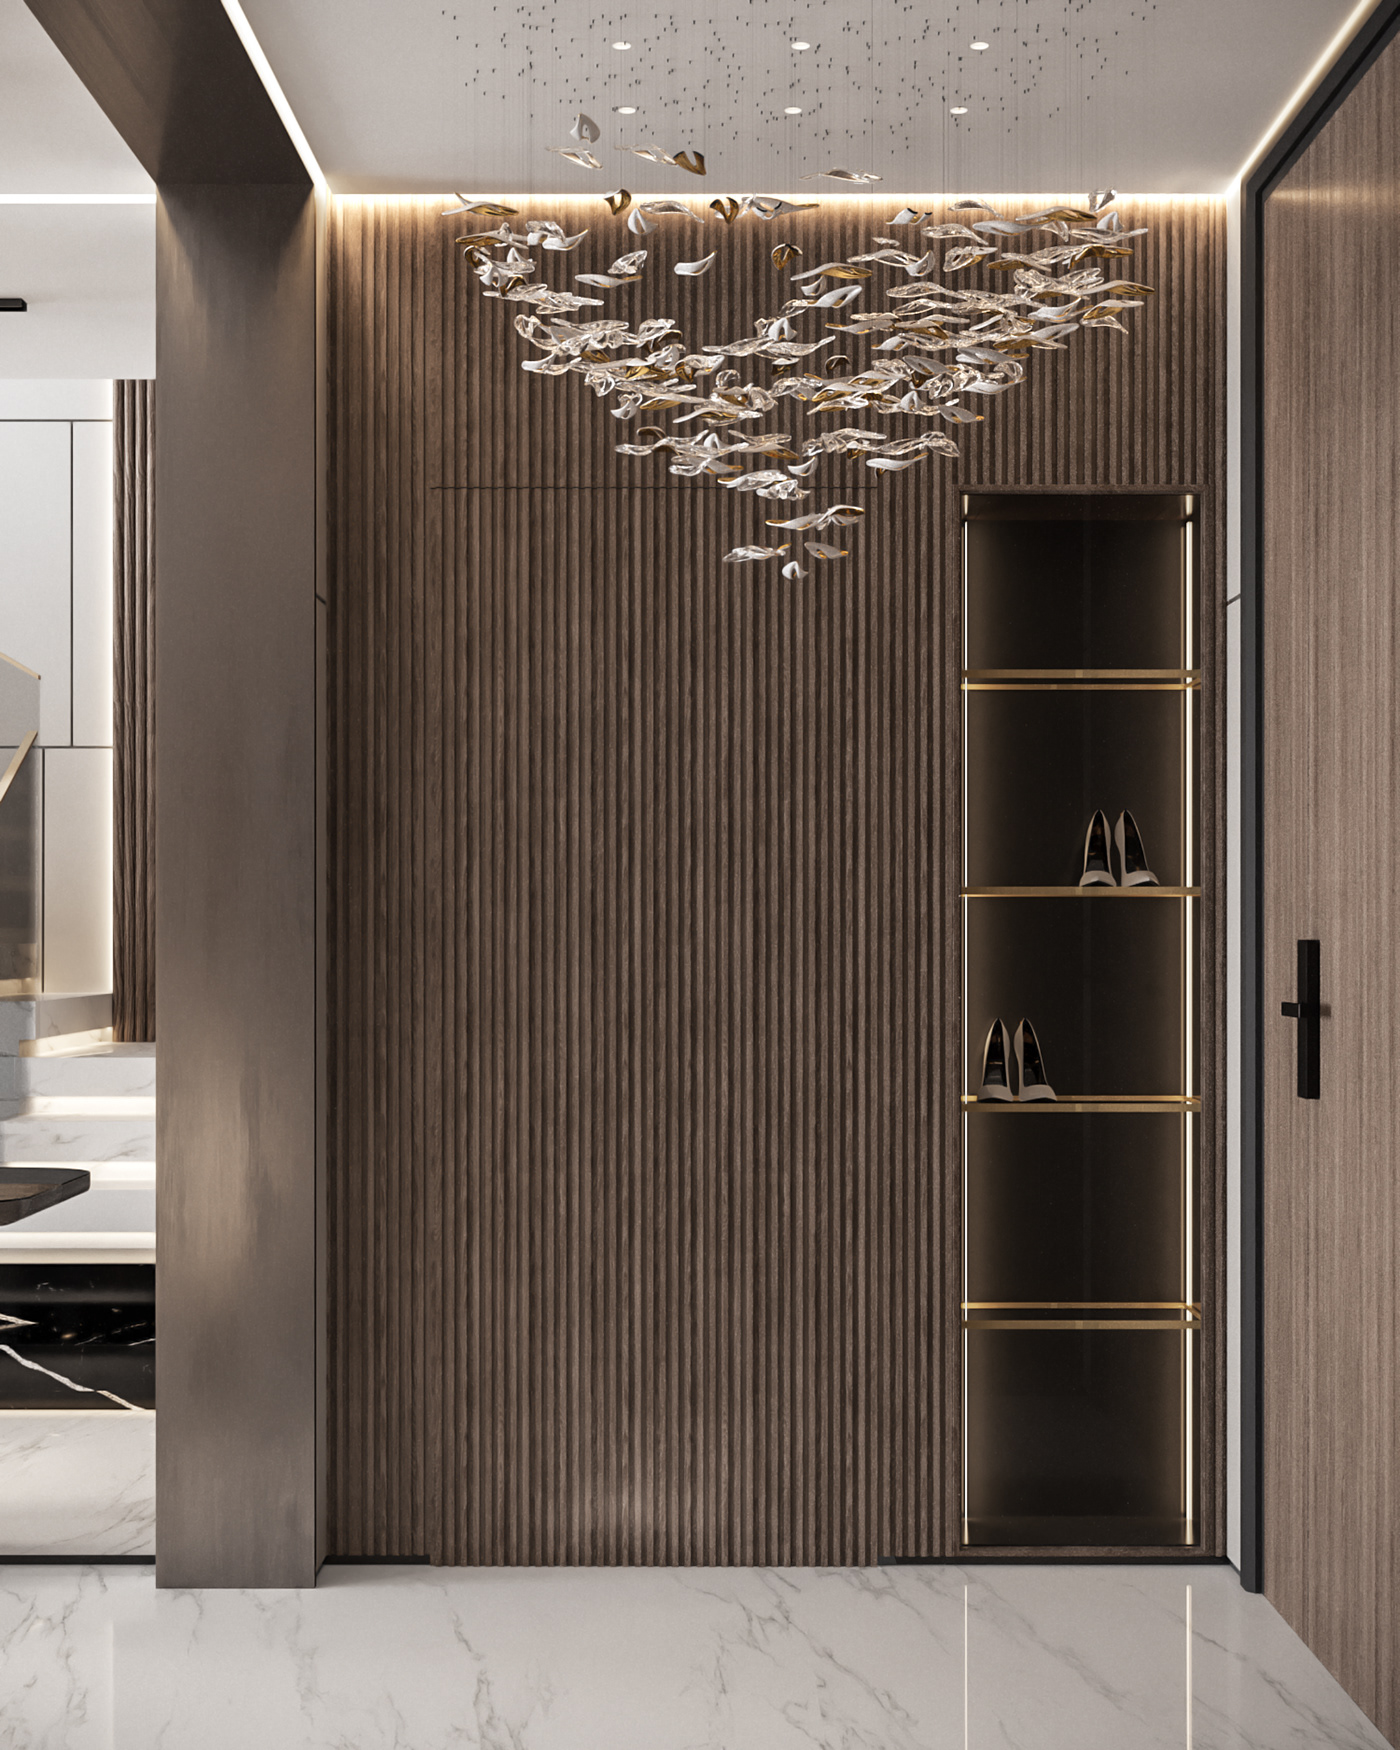 Interior visualization architecture 3ds max corona interior design  corona render  furniture cattelan italia Minotti